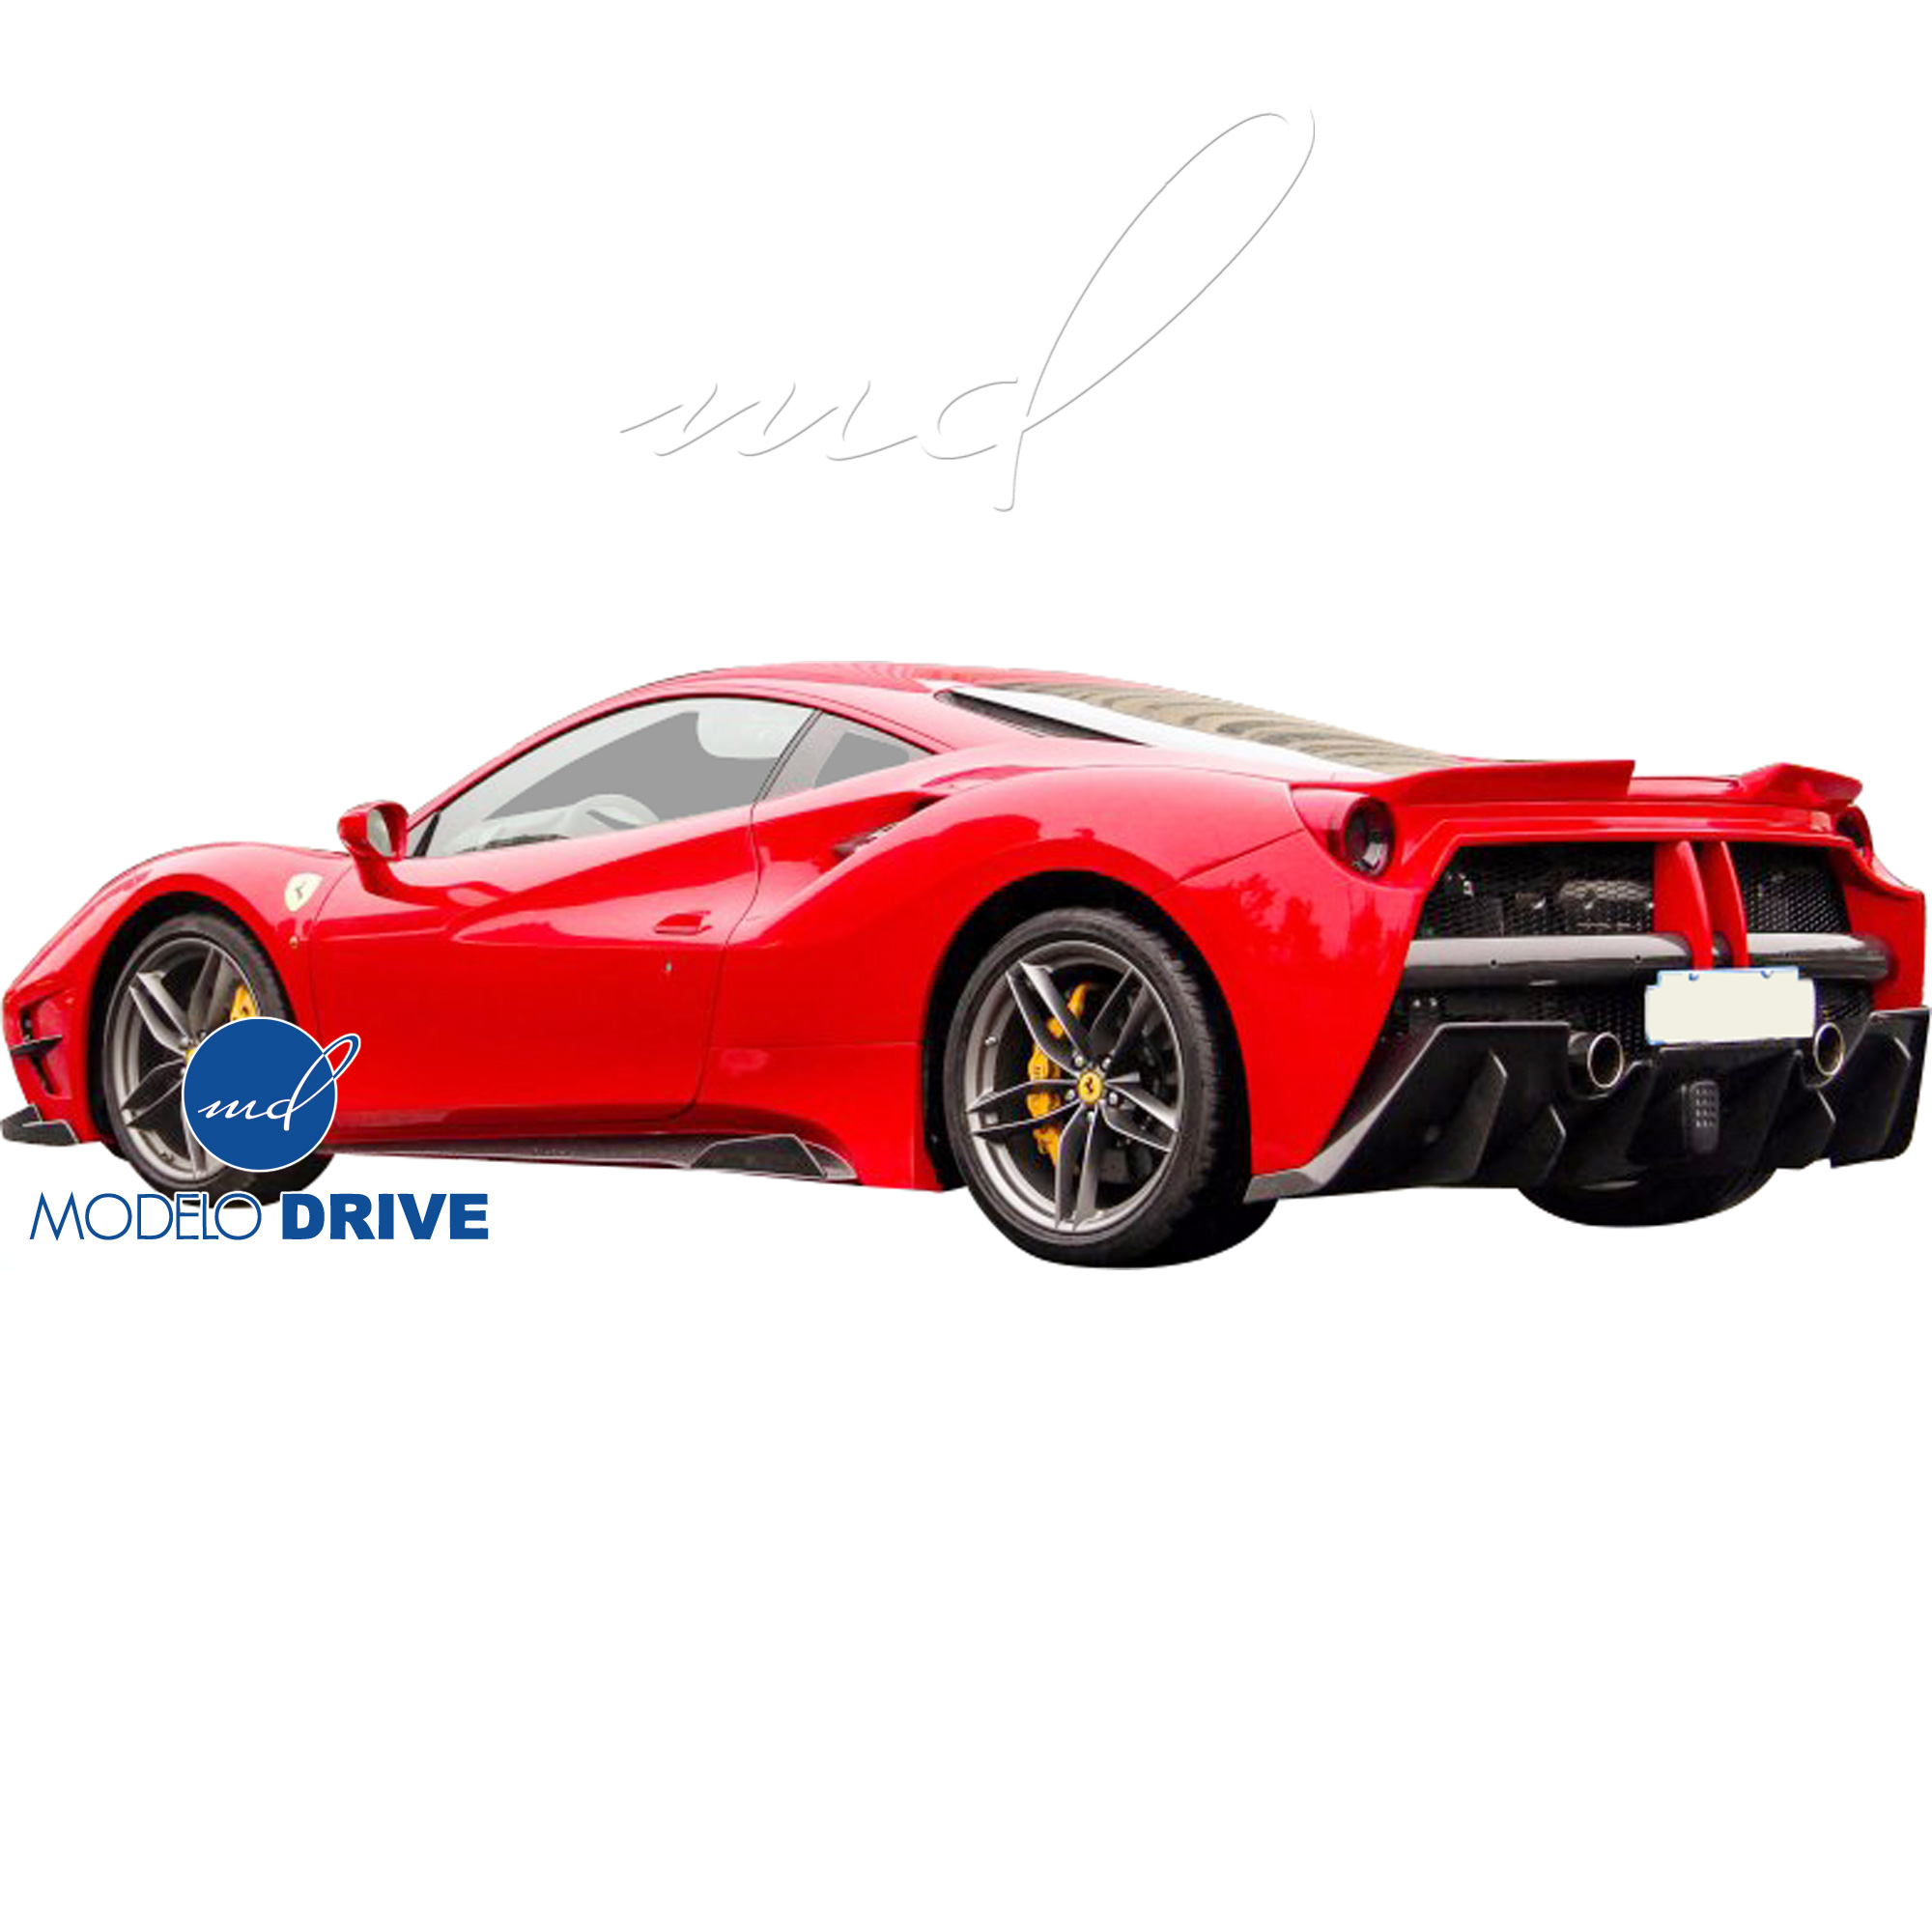 ModeloDrive Partial Carbon Fiber MDES Rear Bumper w Diffuser > Ferrari 488 GTB F142M 2016-2019 - Image 6